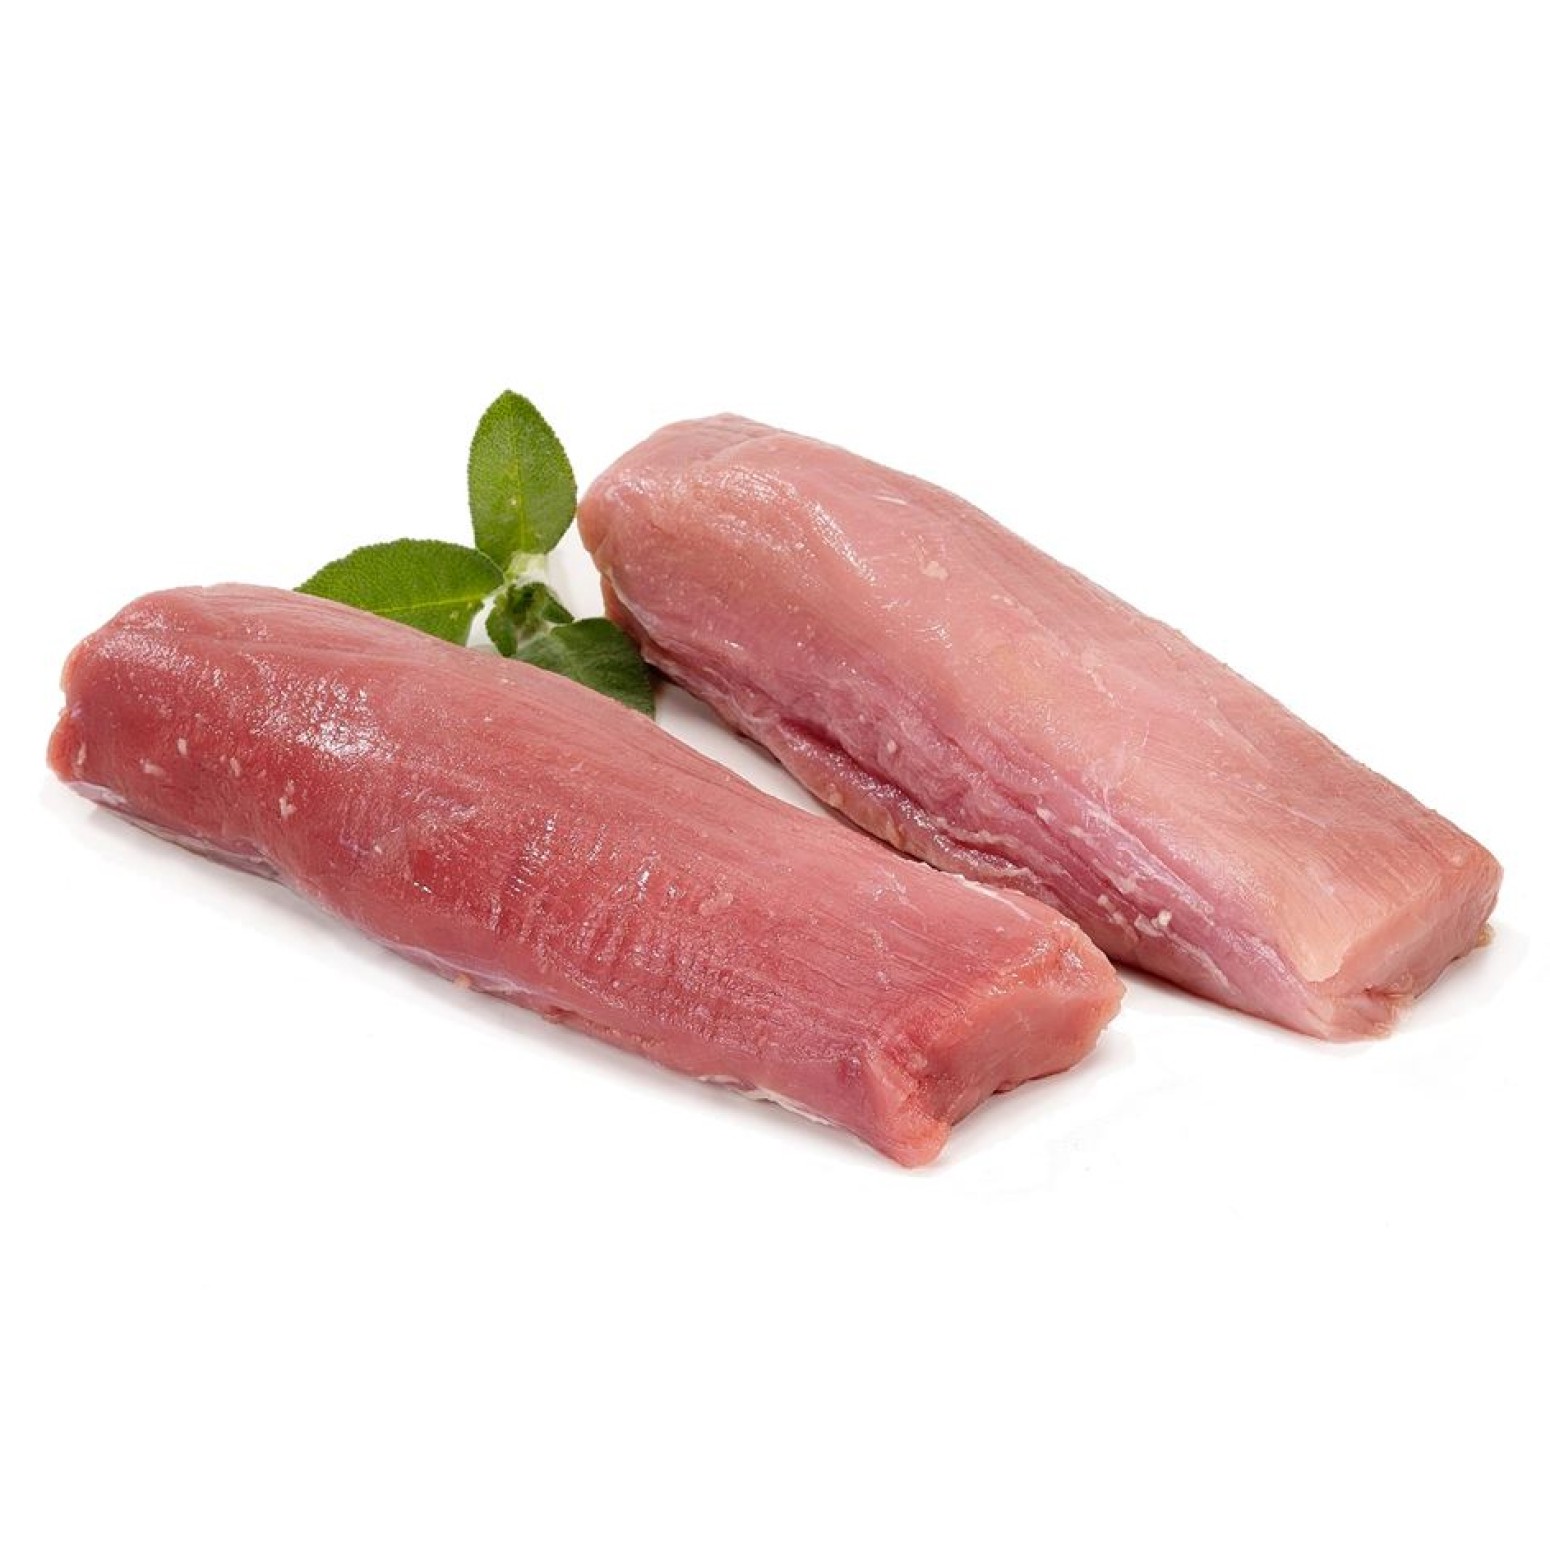 Pork tederloin fresh price thailand